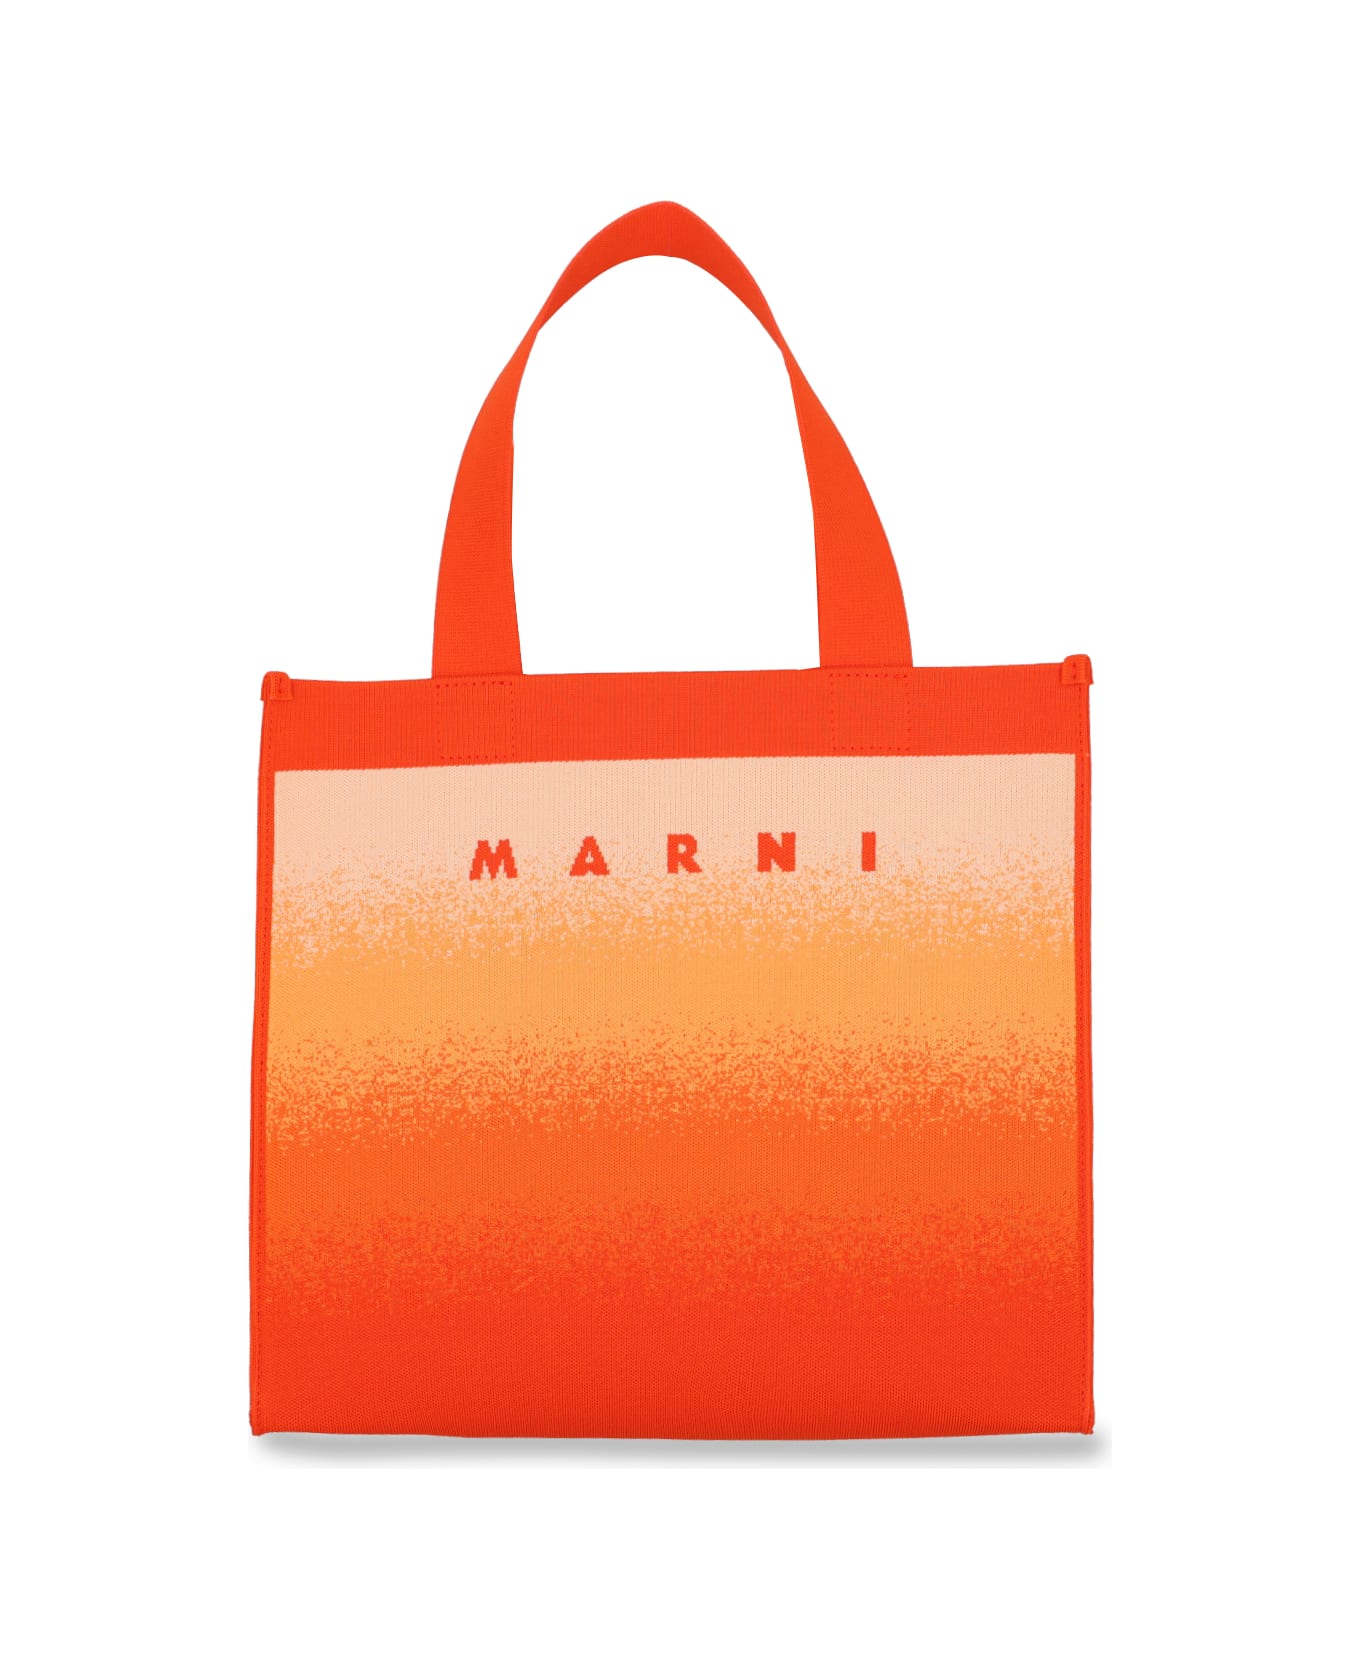 Marni Tote - Orange